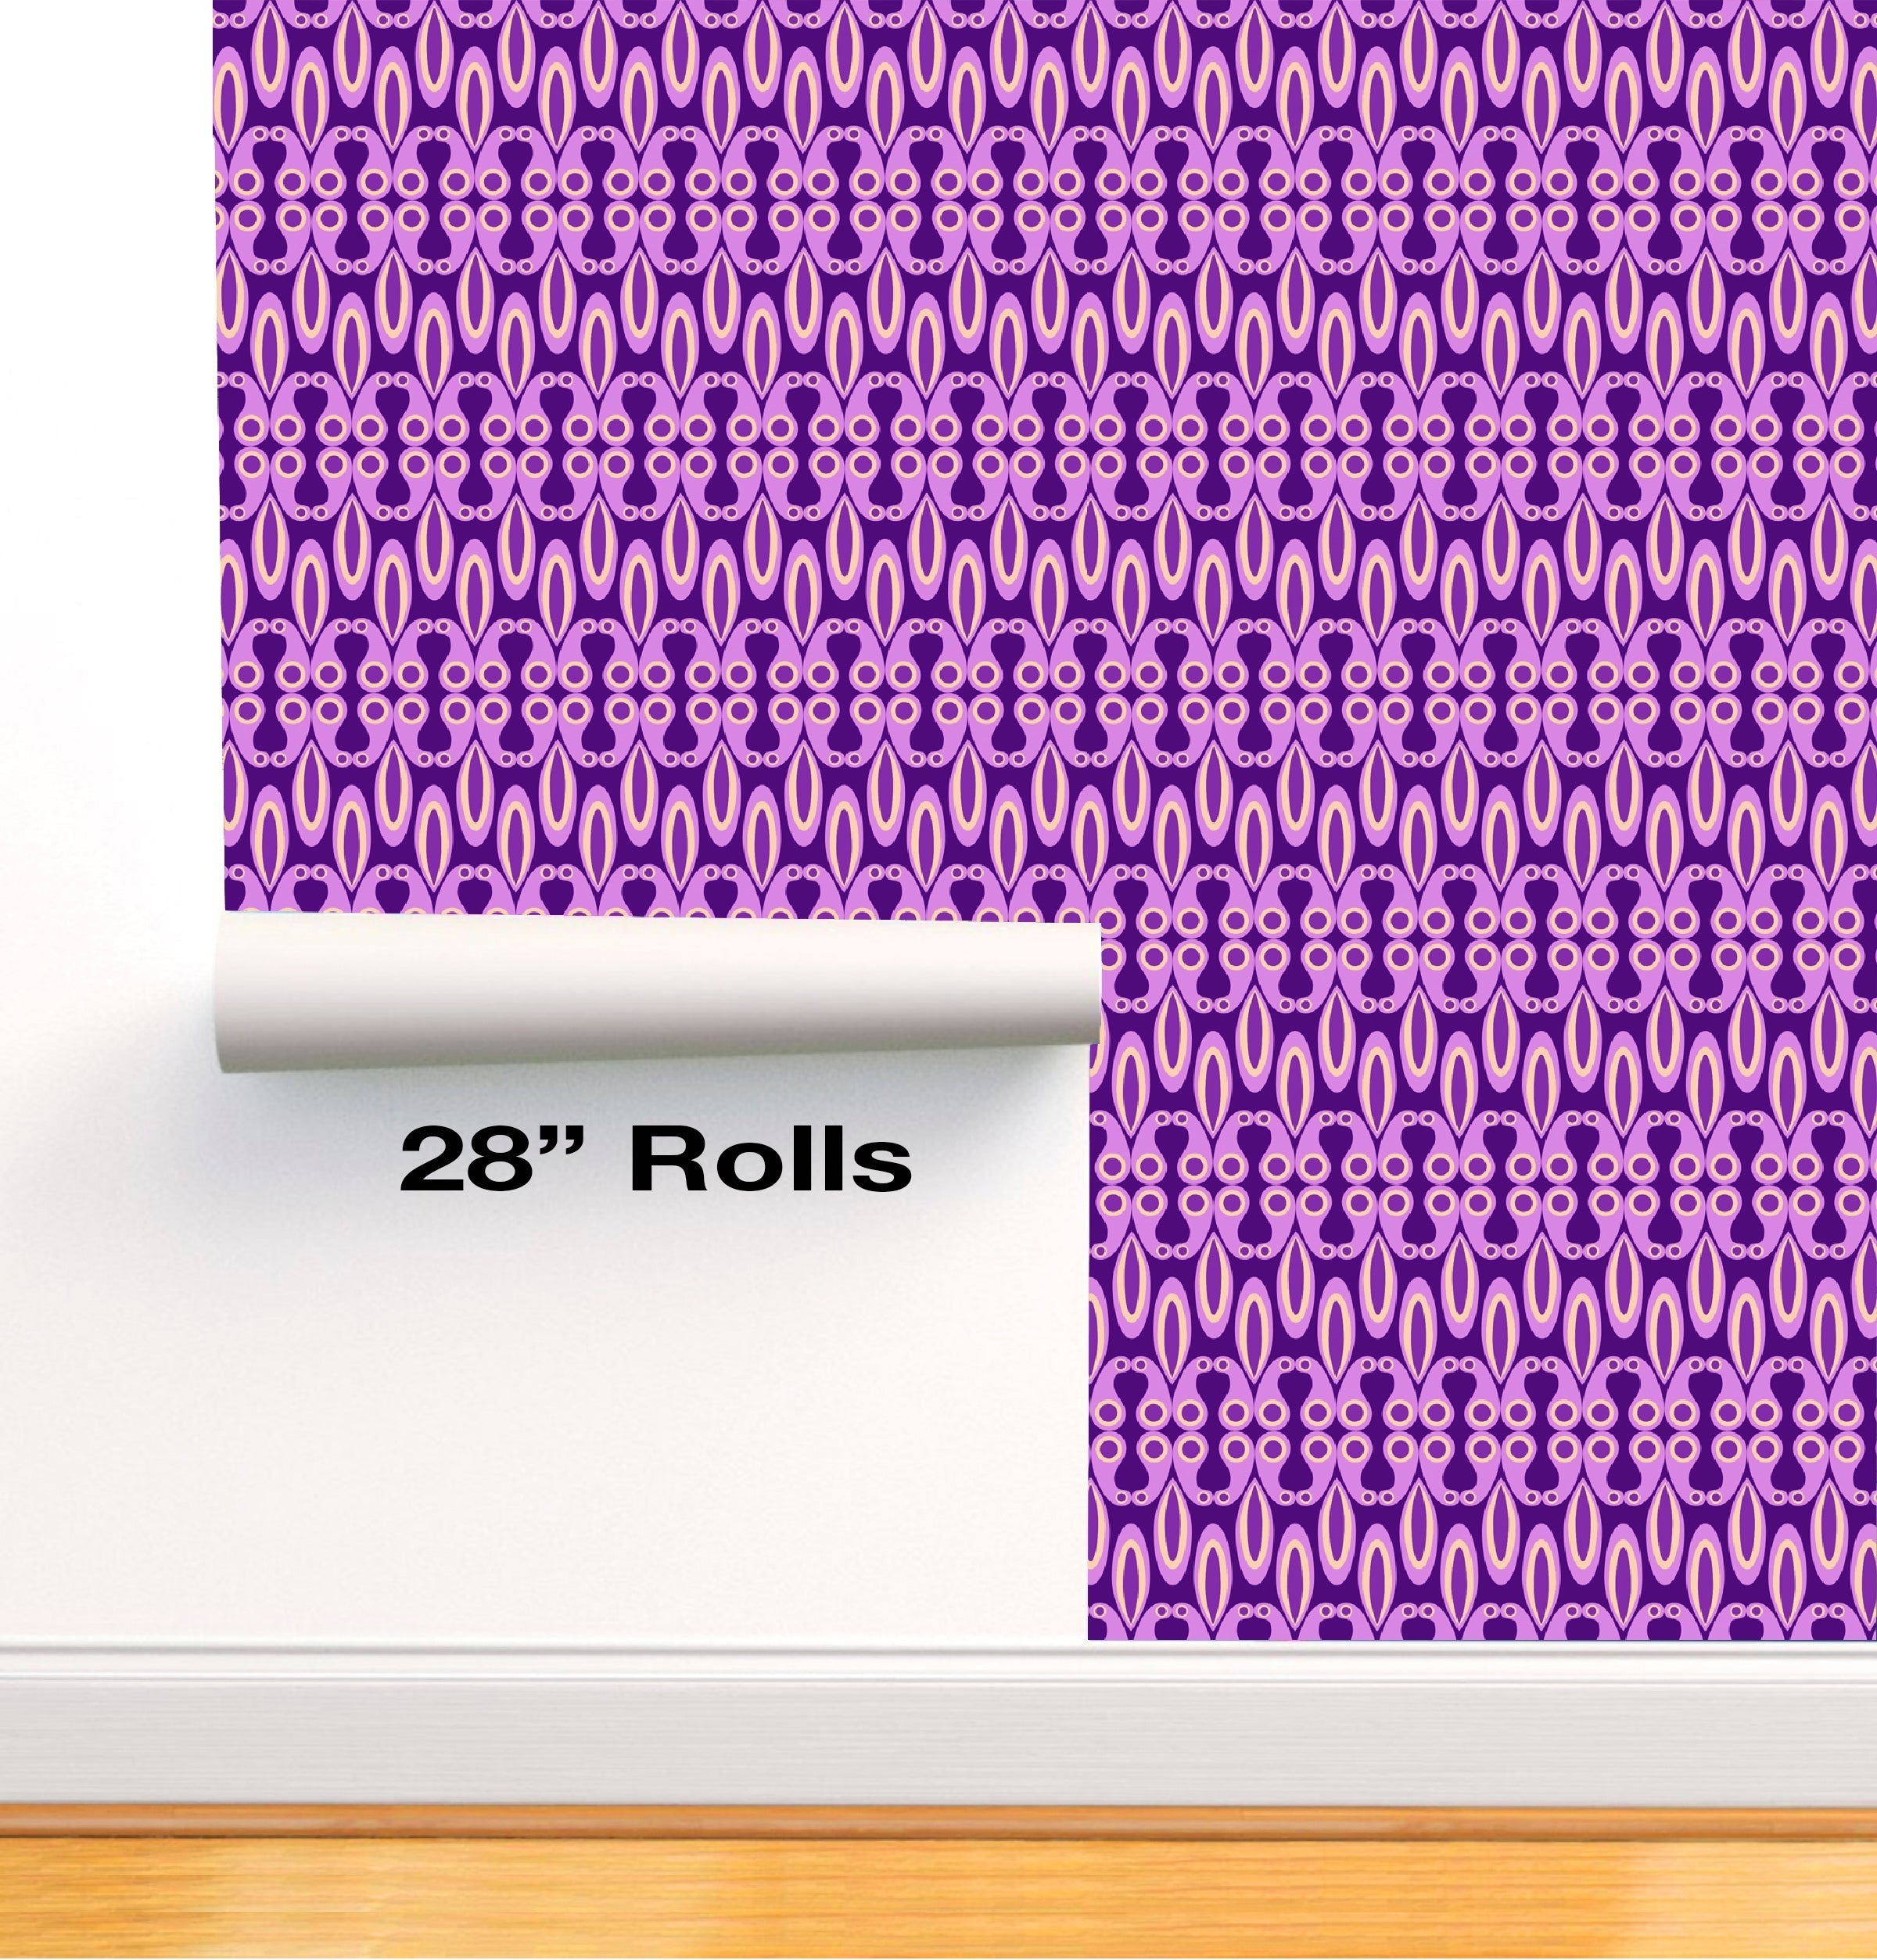 CoolWalls.ca Wallpaper Purple Shapes Wallpaper Seamless 28" Rolls Peel-N-Stick DIY Peel-N-Stick 28" Rolls ID_01